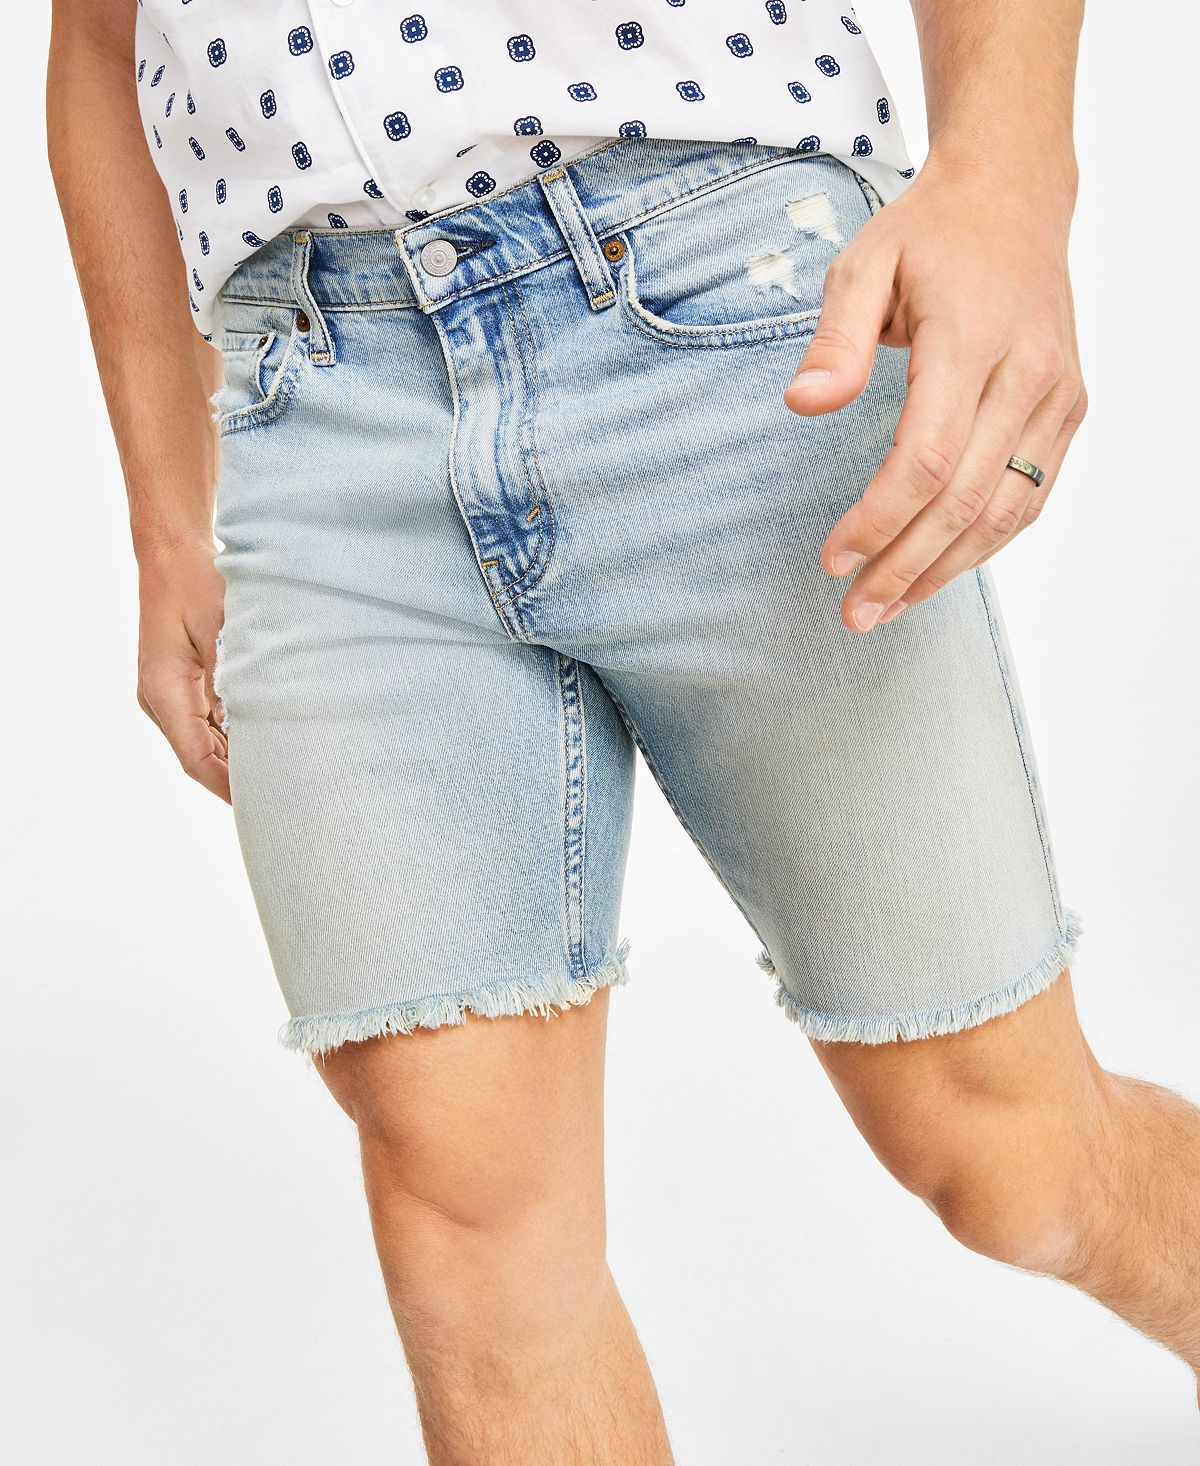 Мужские джинсовые шорты Flex 412 Slim Fit с 5 карманами и шириной 9 дюймов Levi's